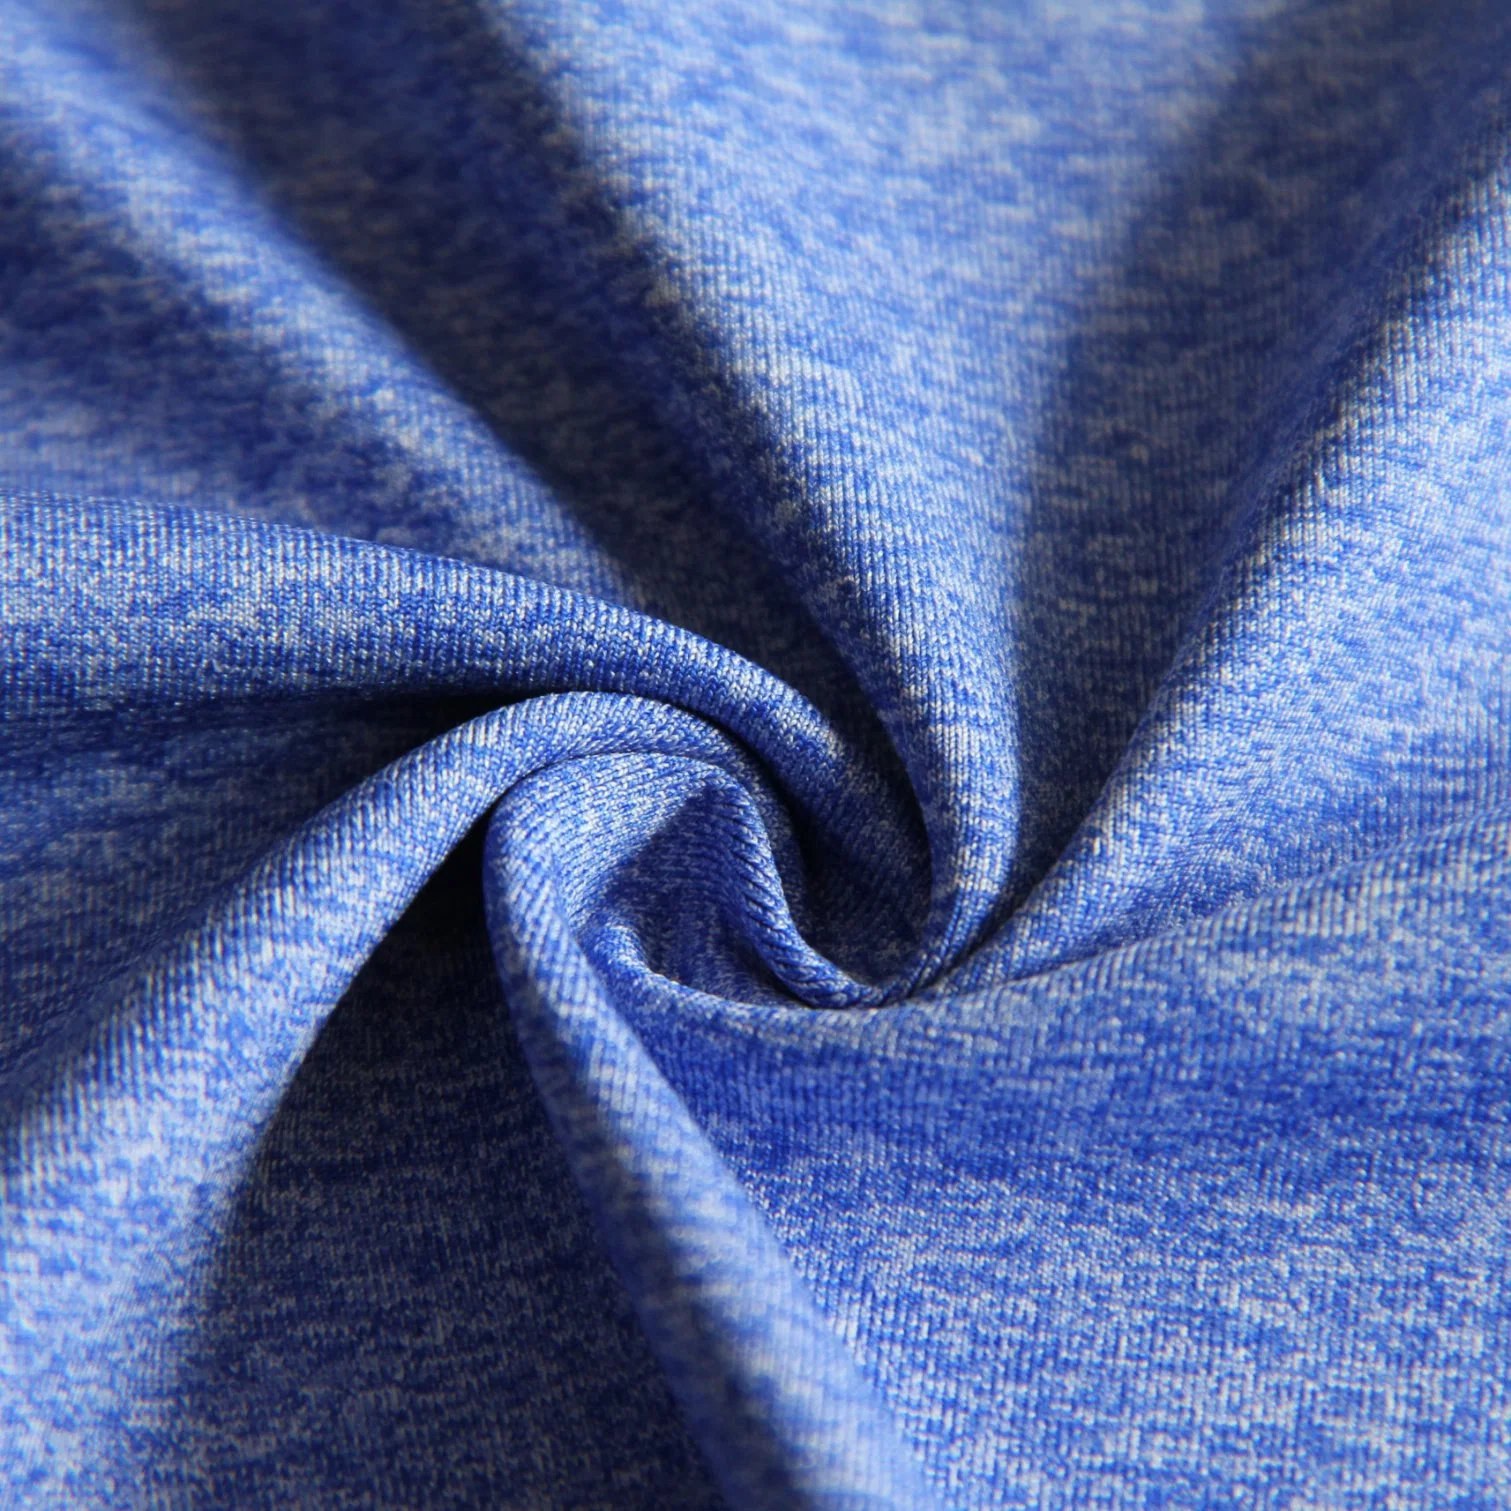 Nt Fine Yarn 90d with Spandex Knit Melange Cotton Like Single Jersey Fabric for Top/Underwear/Sportswear